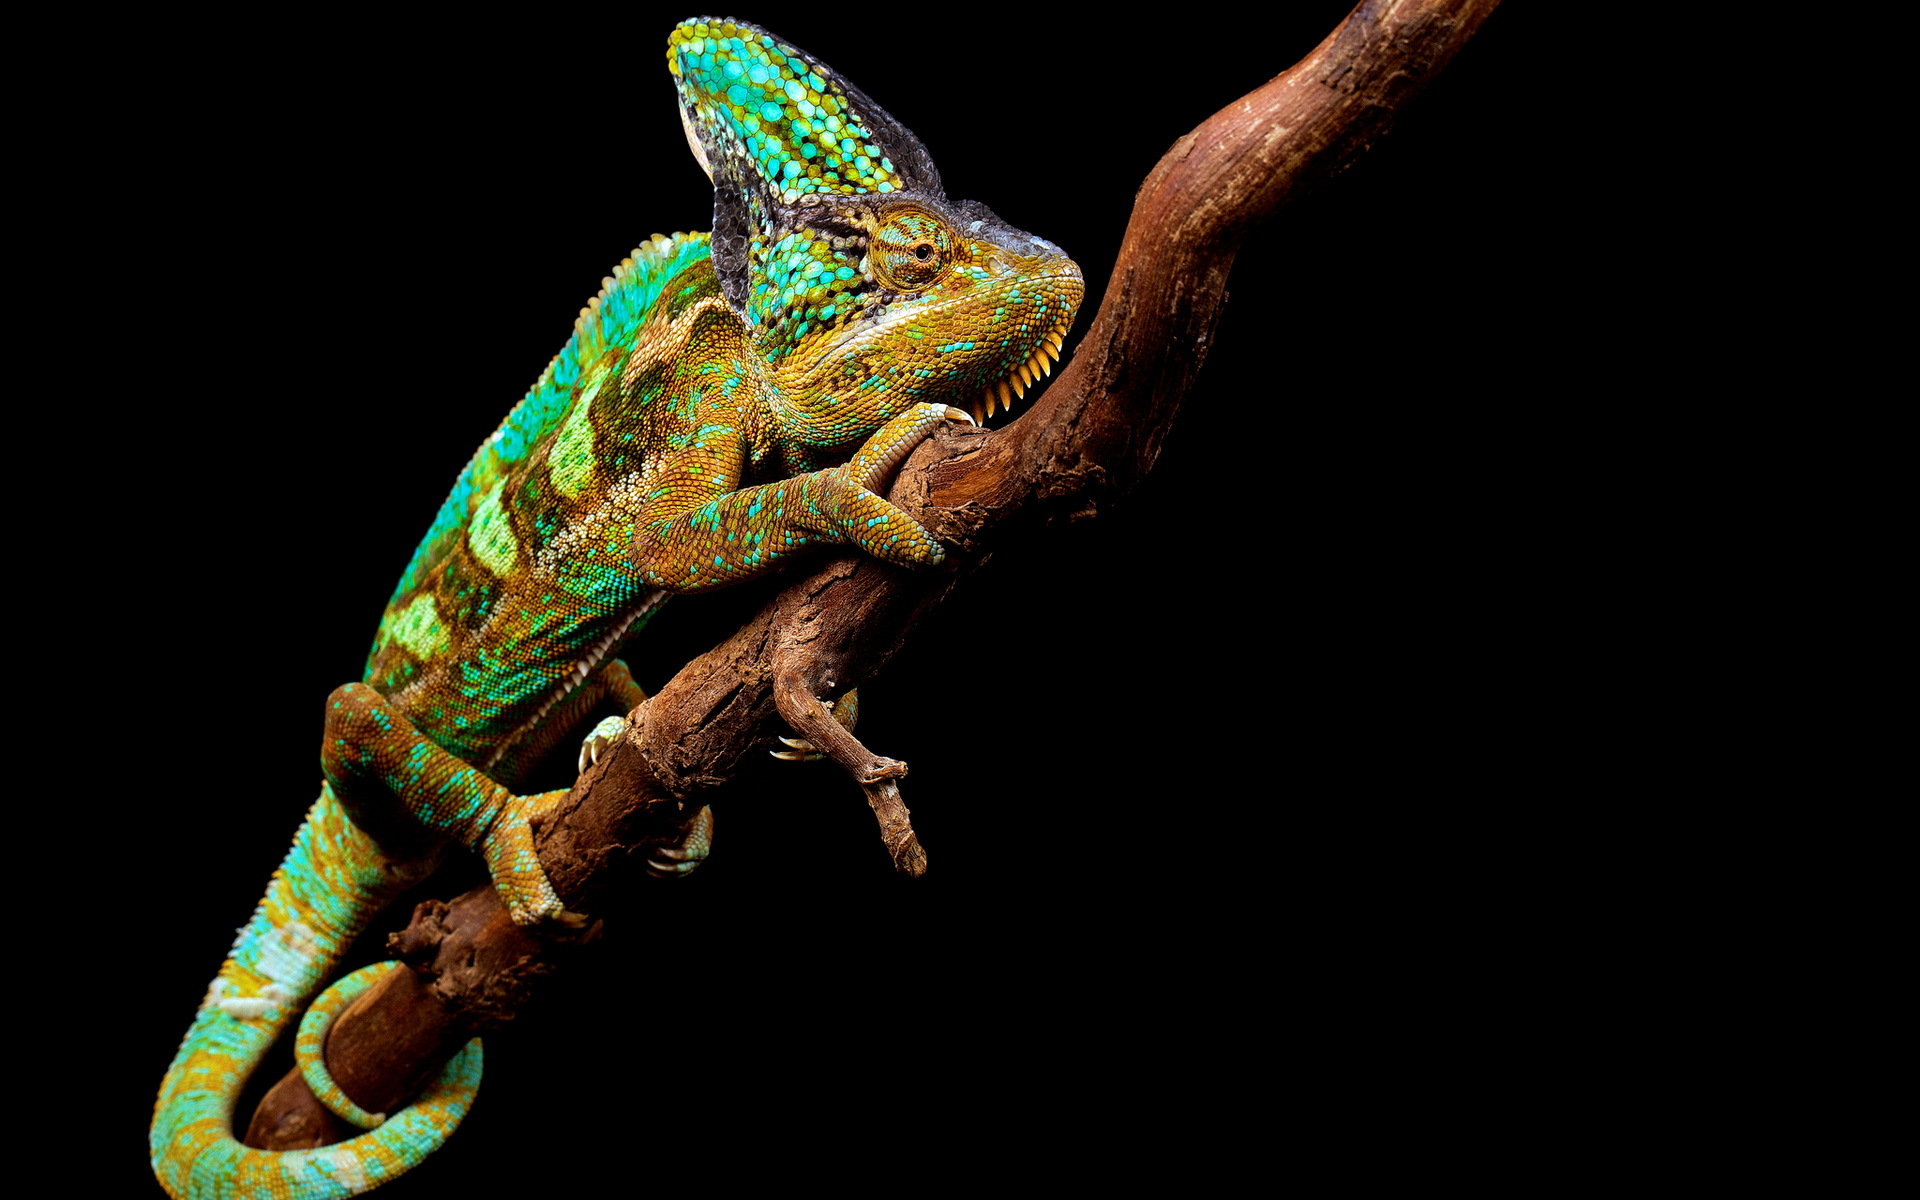 chameleon wallpaper,chameleon,common chameleon,lizard,iguania,reptile